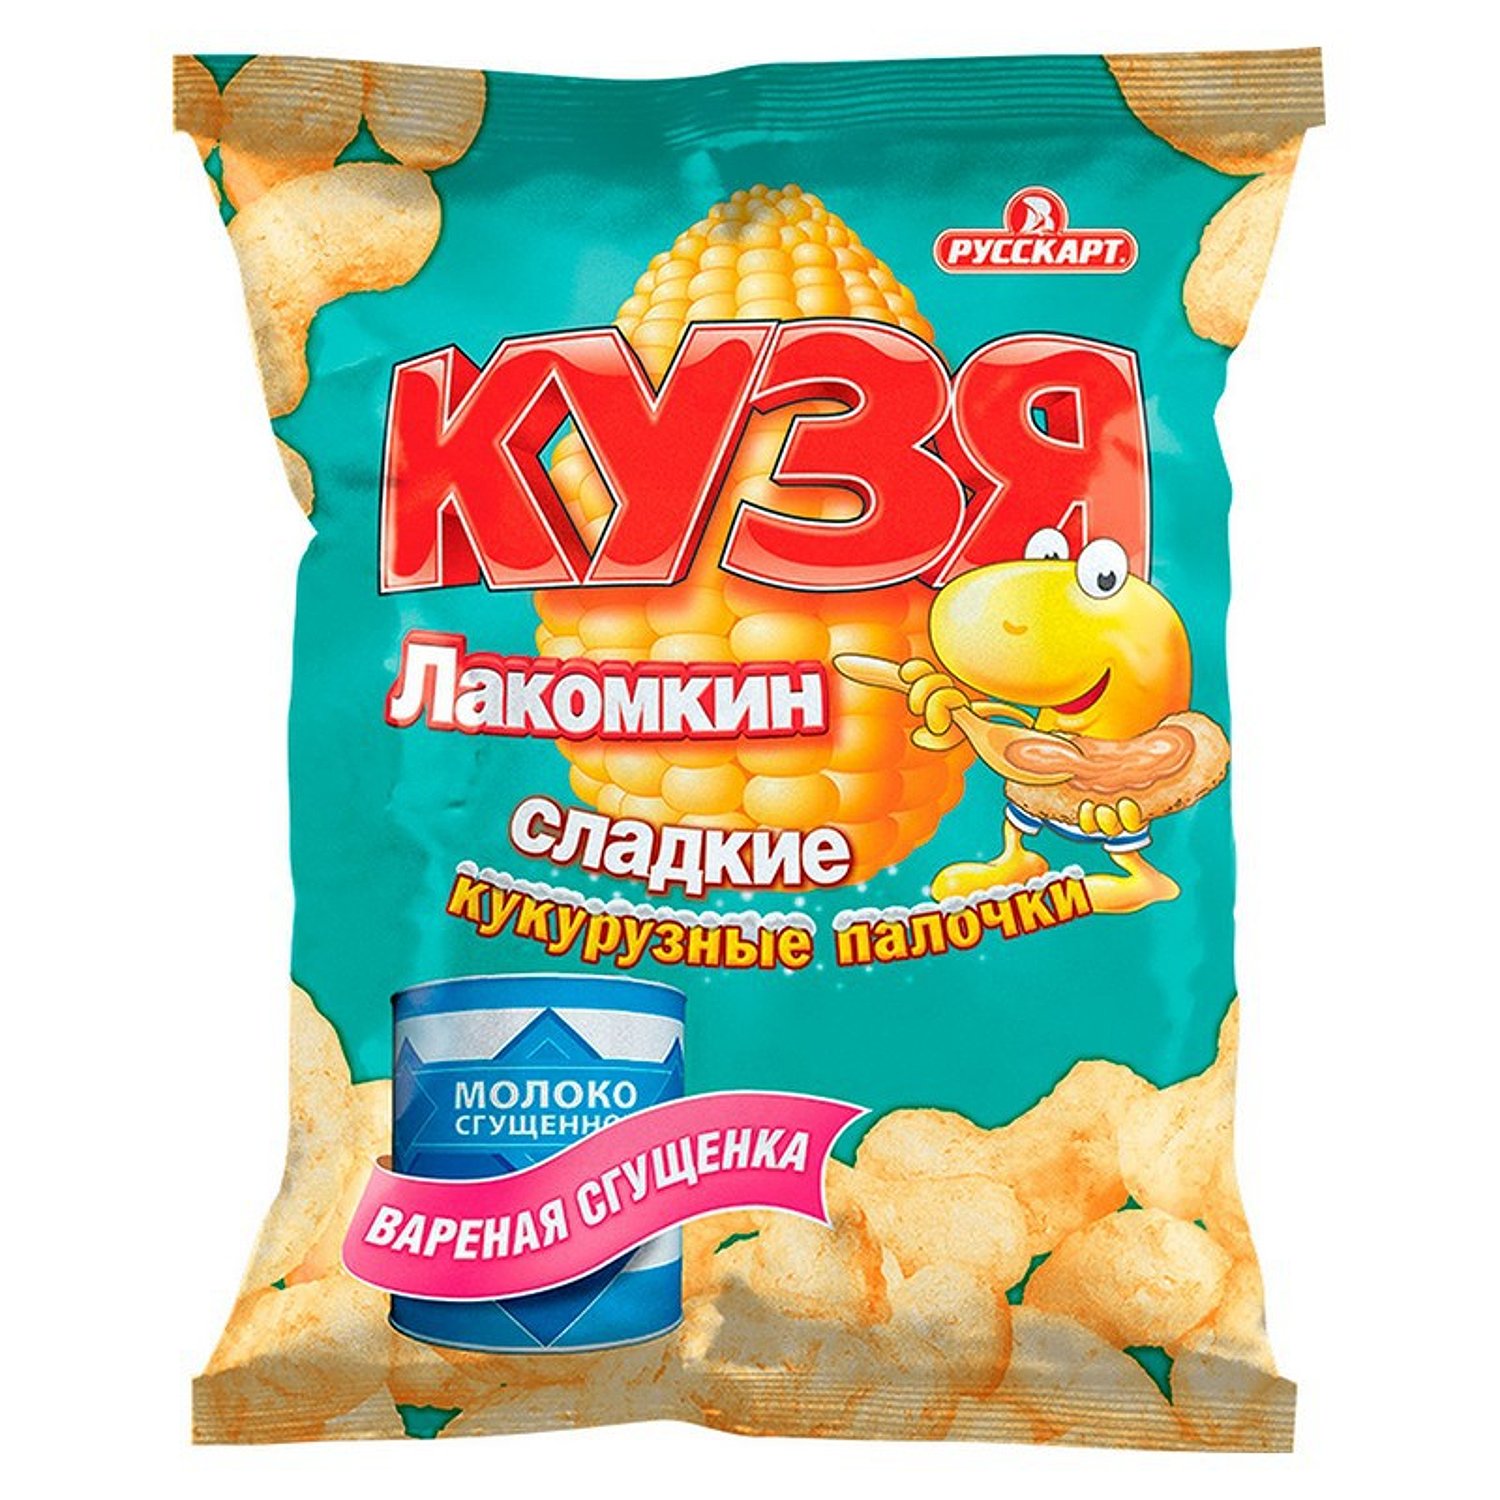 Палочки Кузя Лакомкин кукурузные с сахарной пудрой вареной сгущенкой .